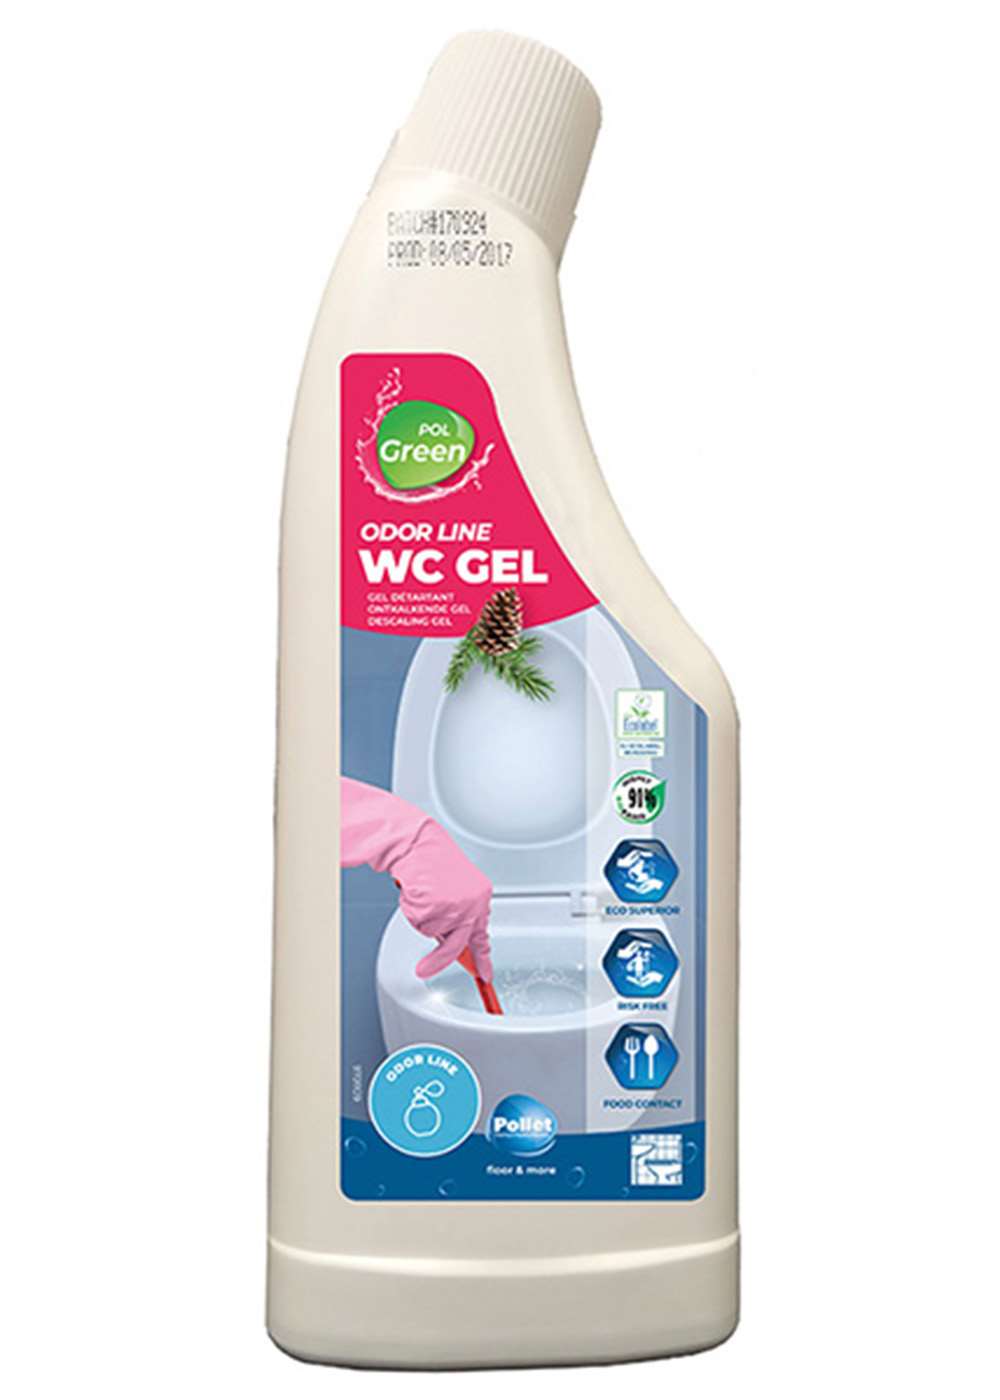 POLGREEN odorline wc gel - Cleanline bv